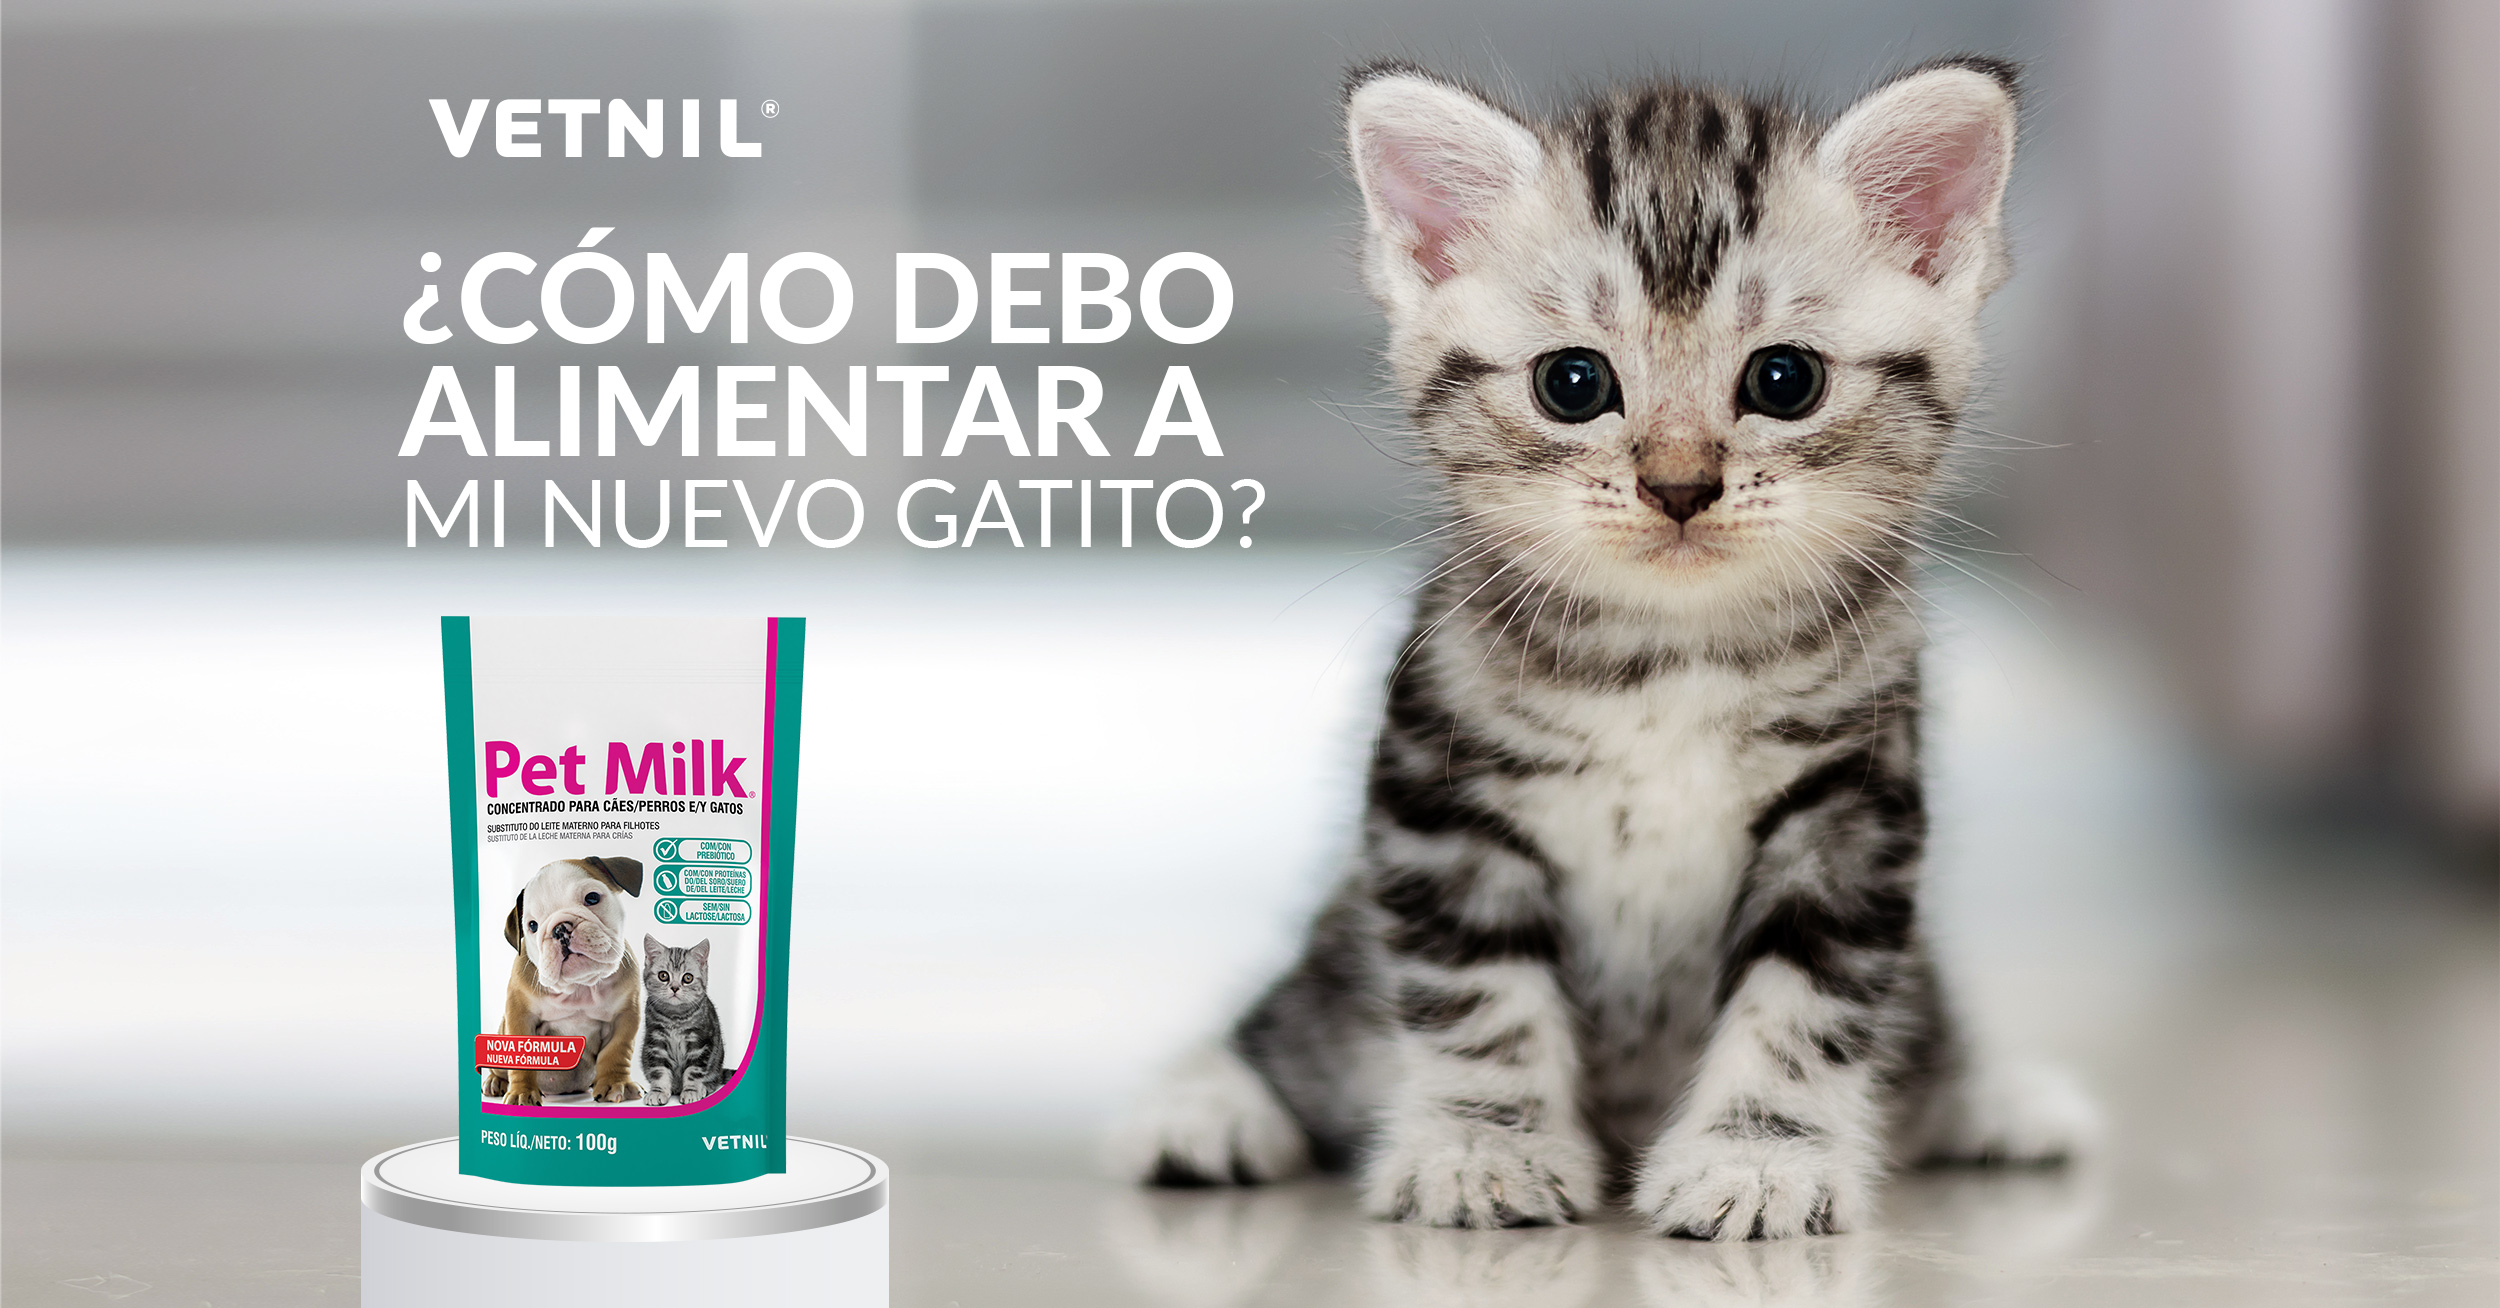 puesta de sol crisis Final Cómo debo alimentar a mi nuevo gatito? - Mascota Club del Perú